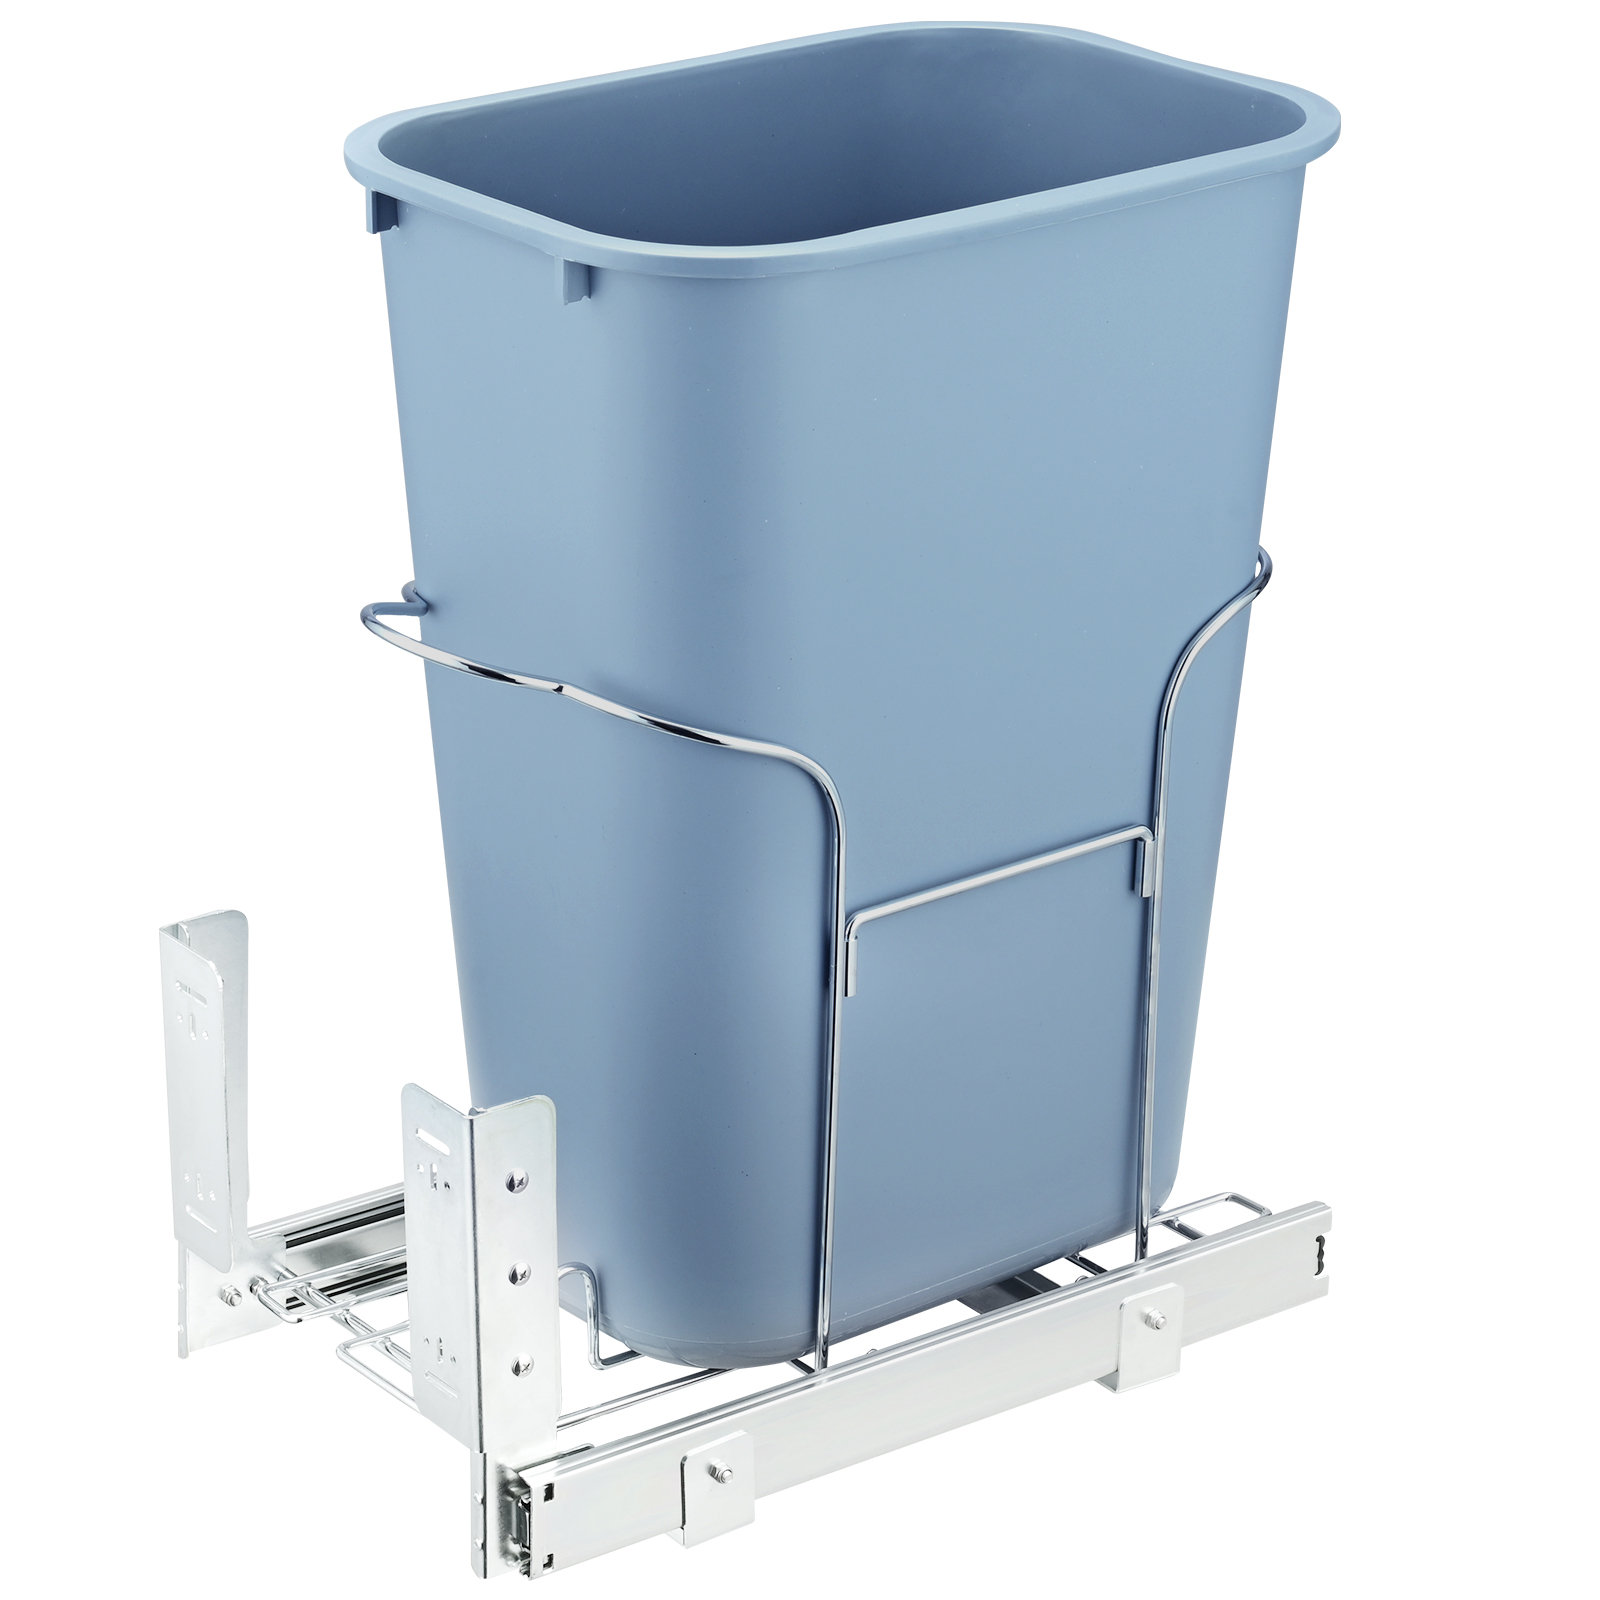 https://assets.wfcdn.com/im/90408113/compr-r85/2520/252047995/vevor-pull-out-trash-can-35l-single-bin-under-mount-kitchen-waste-container-with-slide-handle-kit.jpg